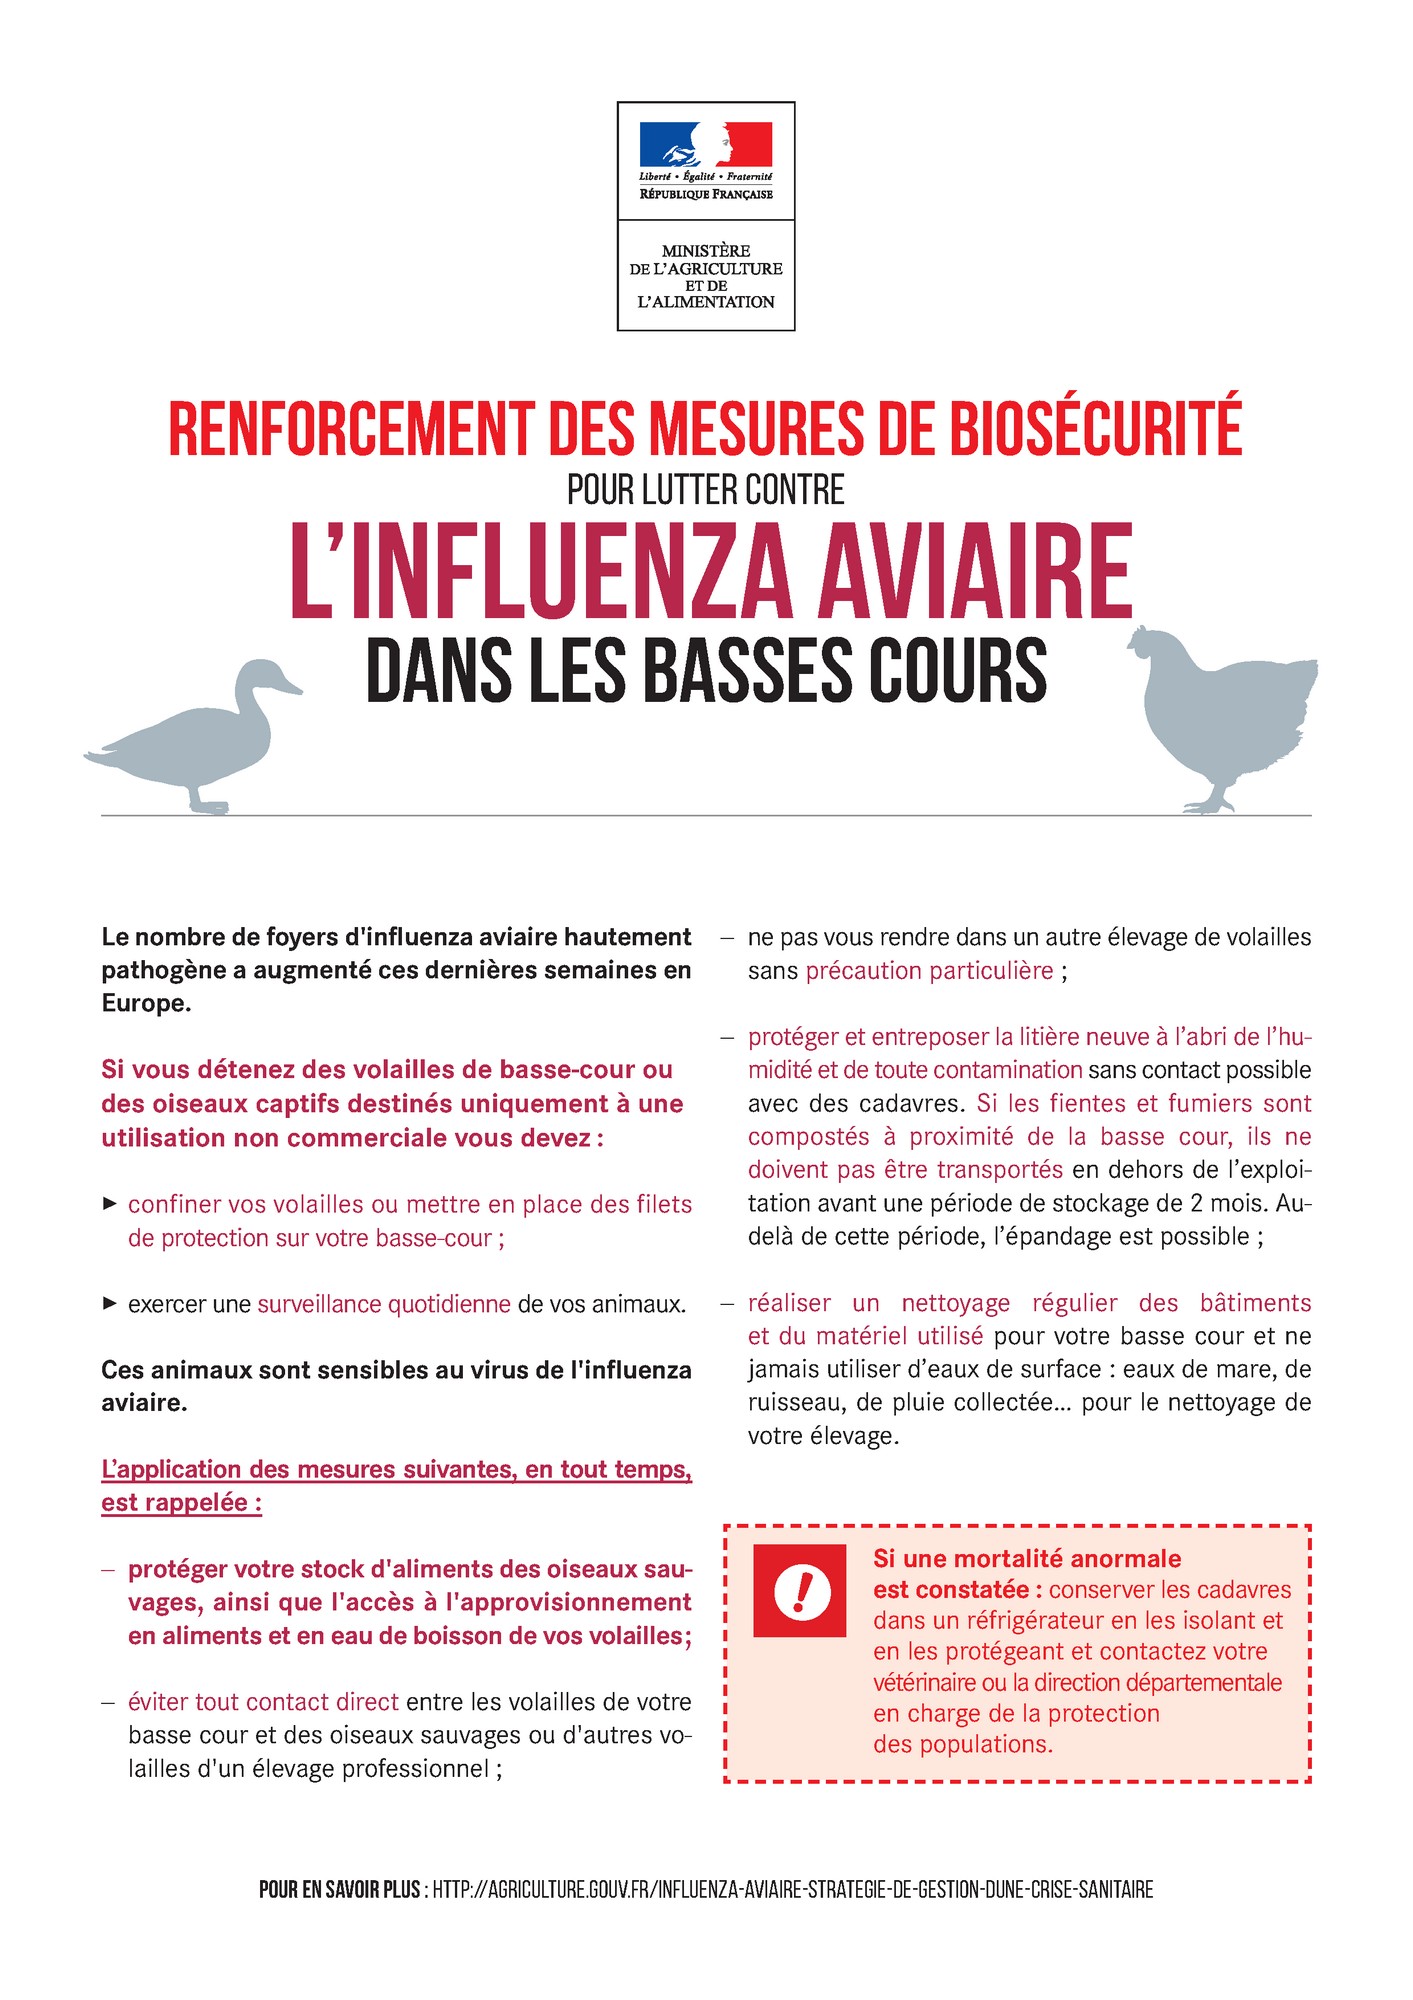 Influenza Aviaire - Renforcement de la biosécurité dans les basses cours 1.jpg